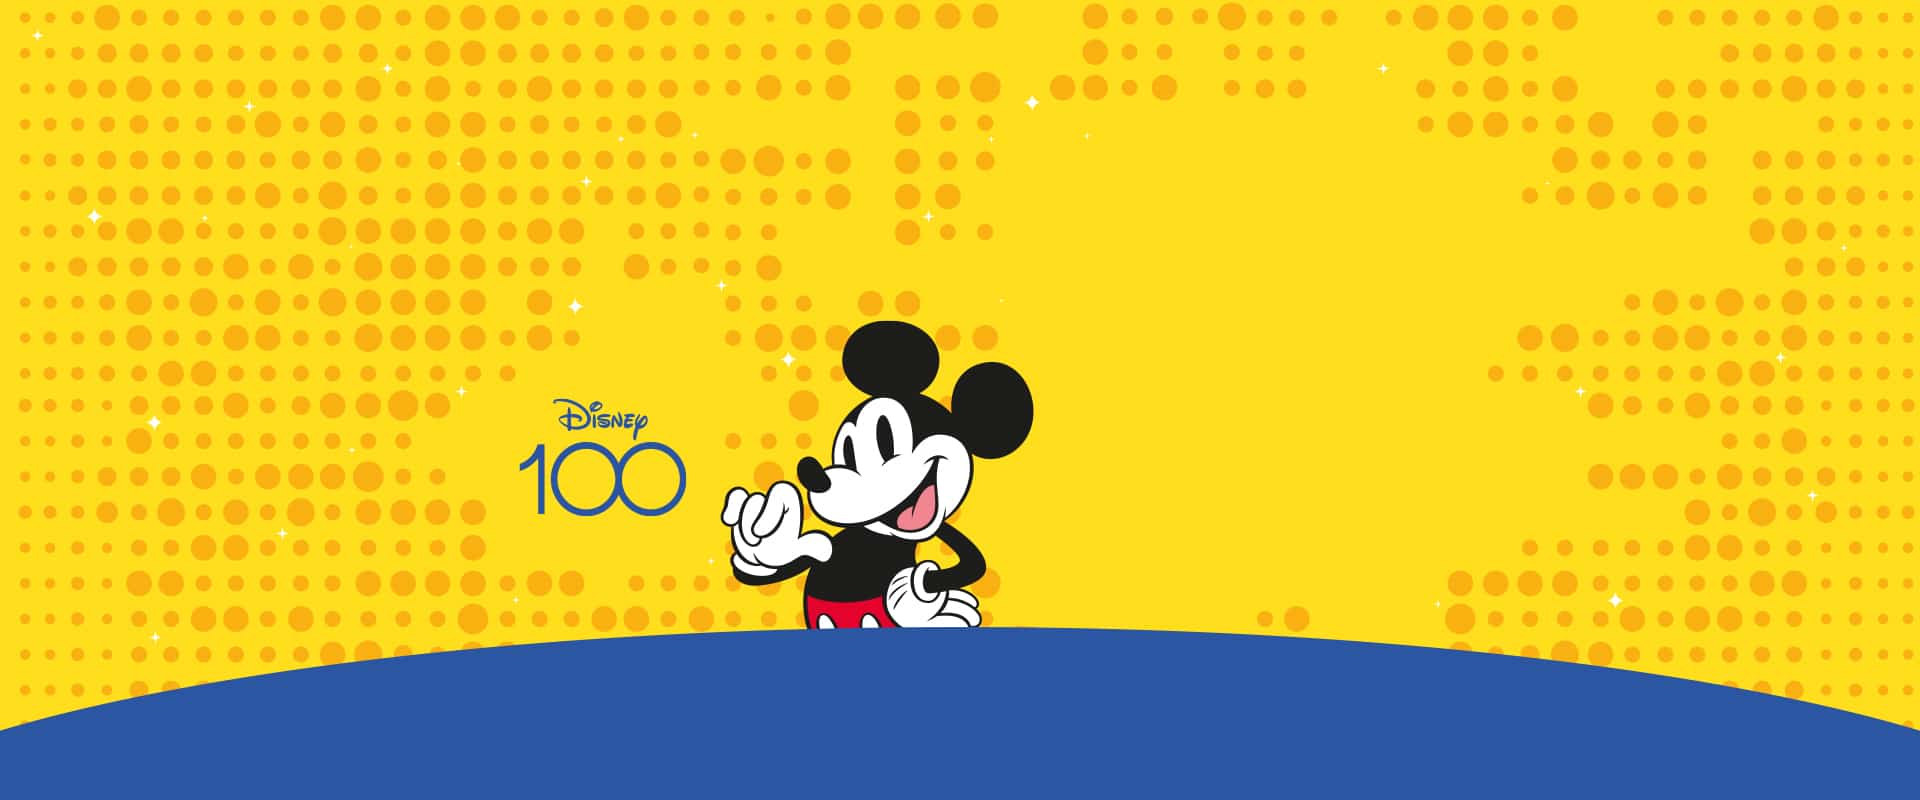 Illustration de Mickey sur fond jaune pour les 100 ans de Disney